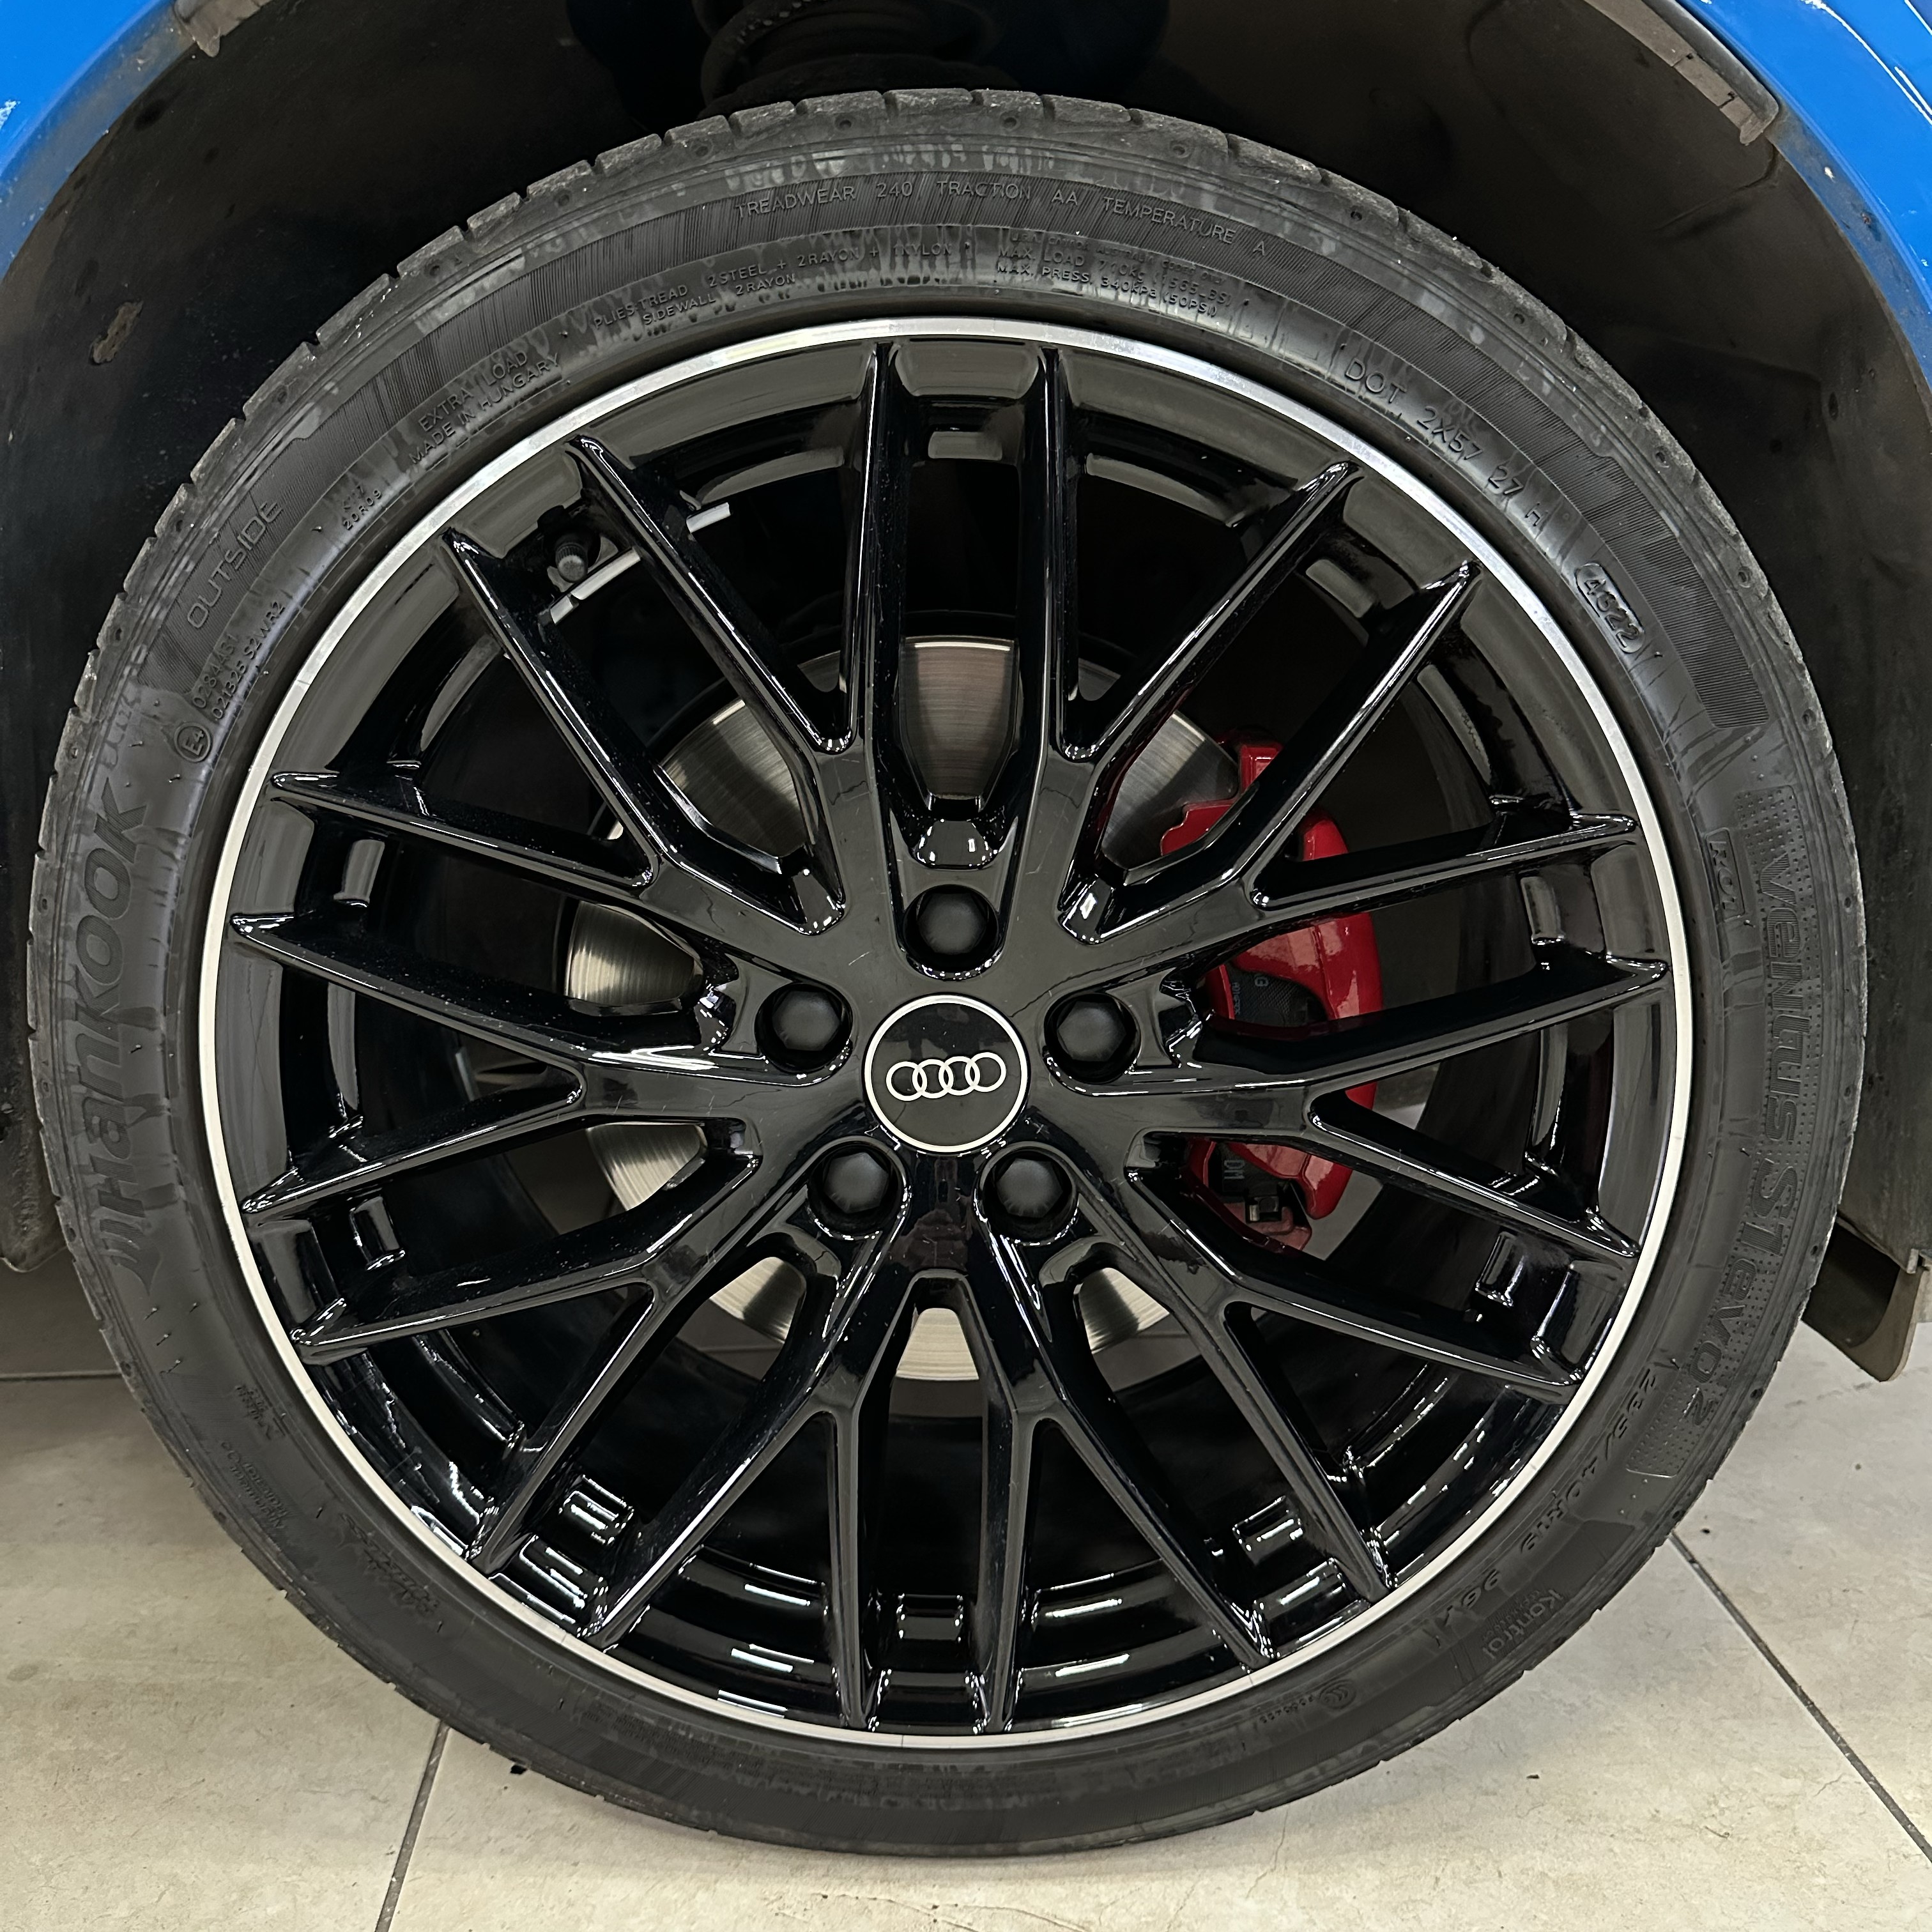 Audi Q2 2022 Blue